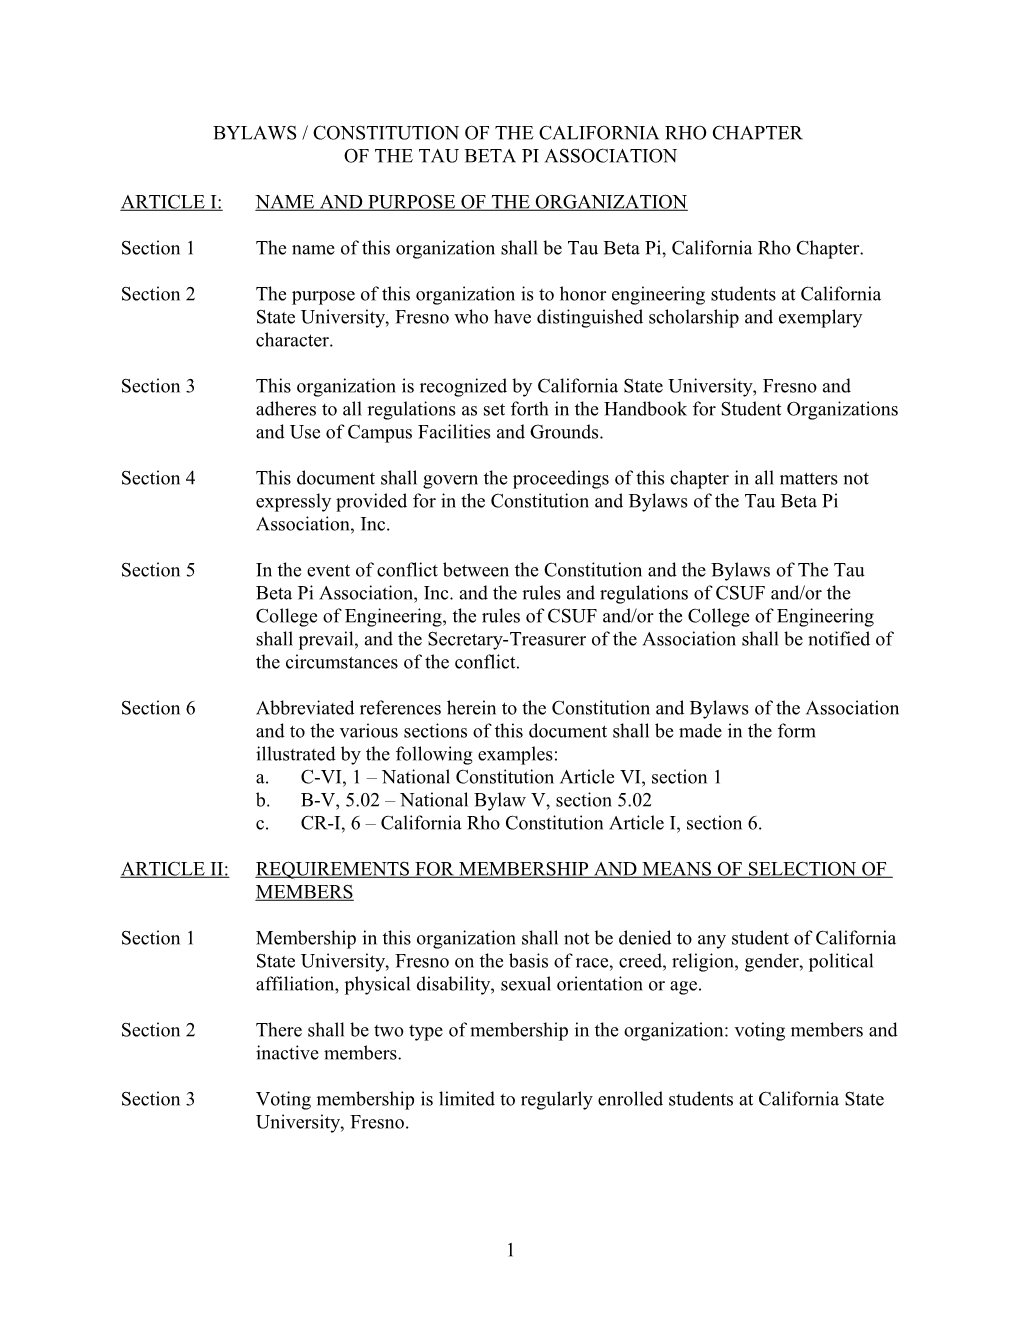 Constitution of Tau Beta Pi